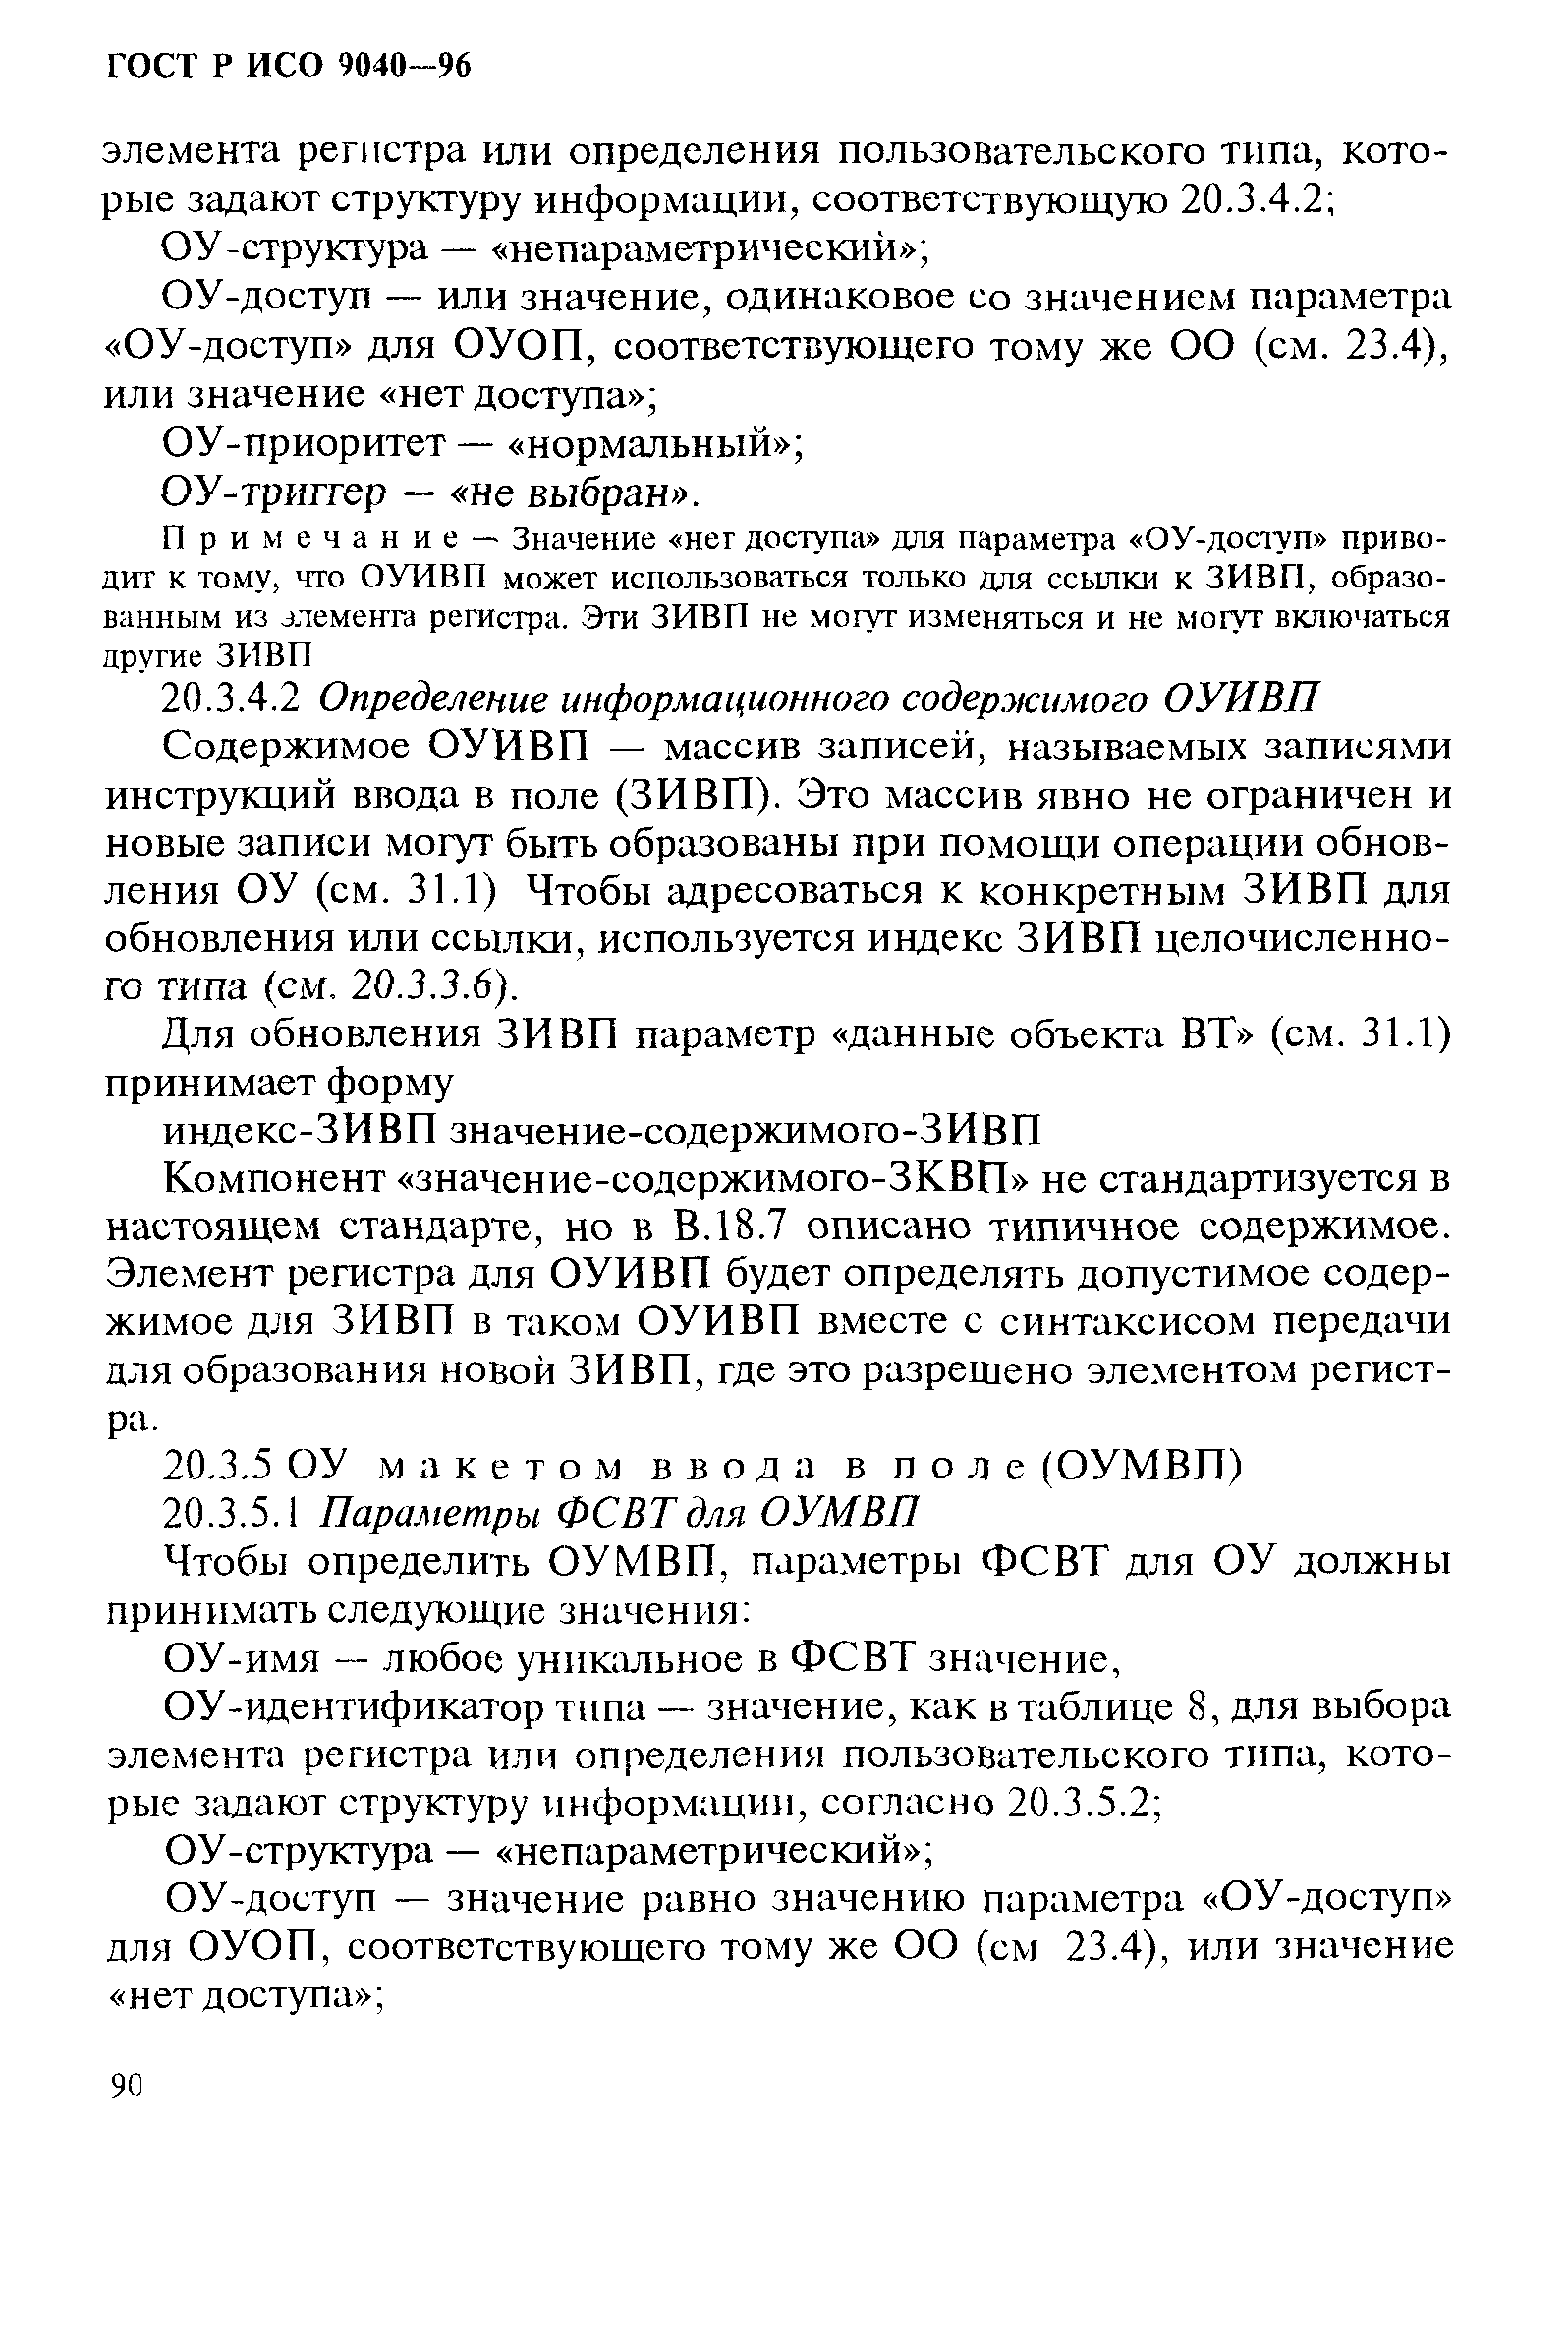 ГОСТ Р ИСО 9040-96